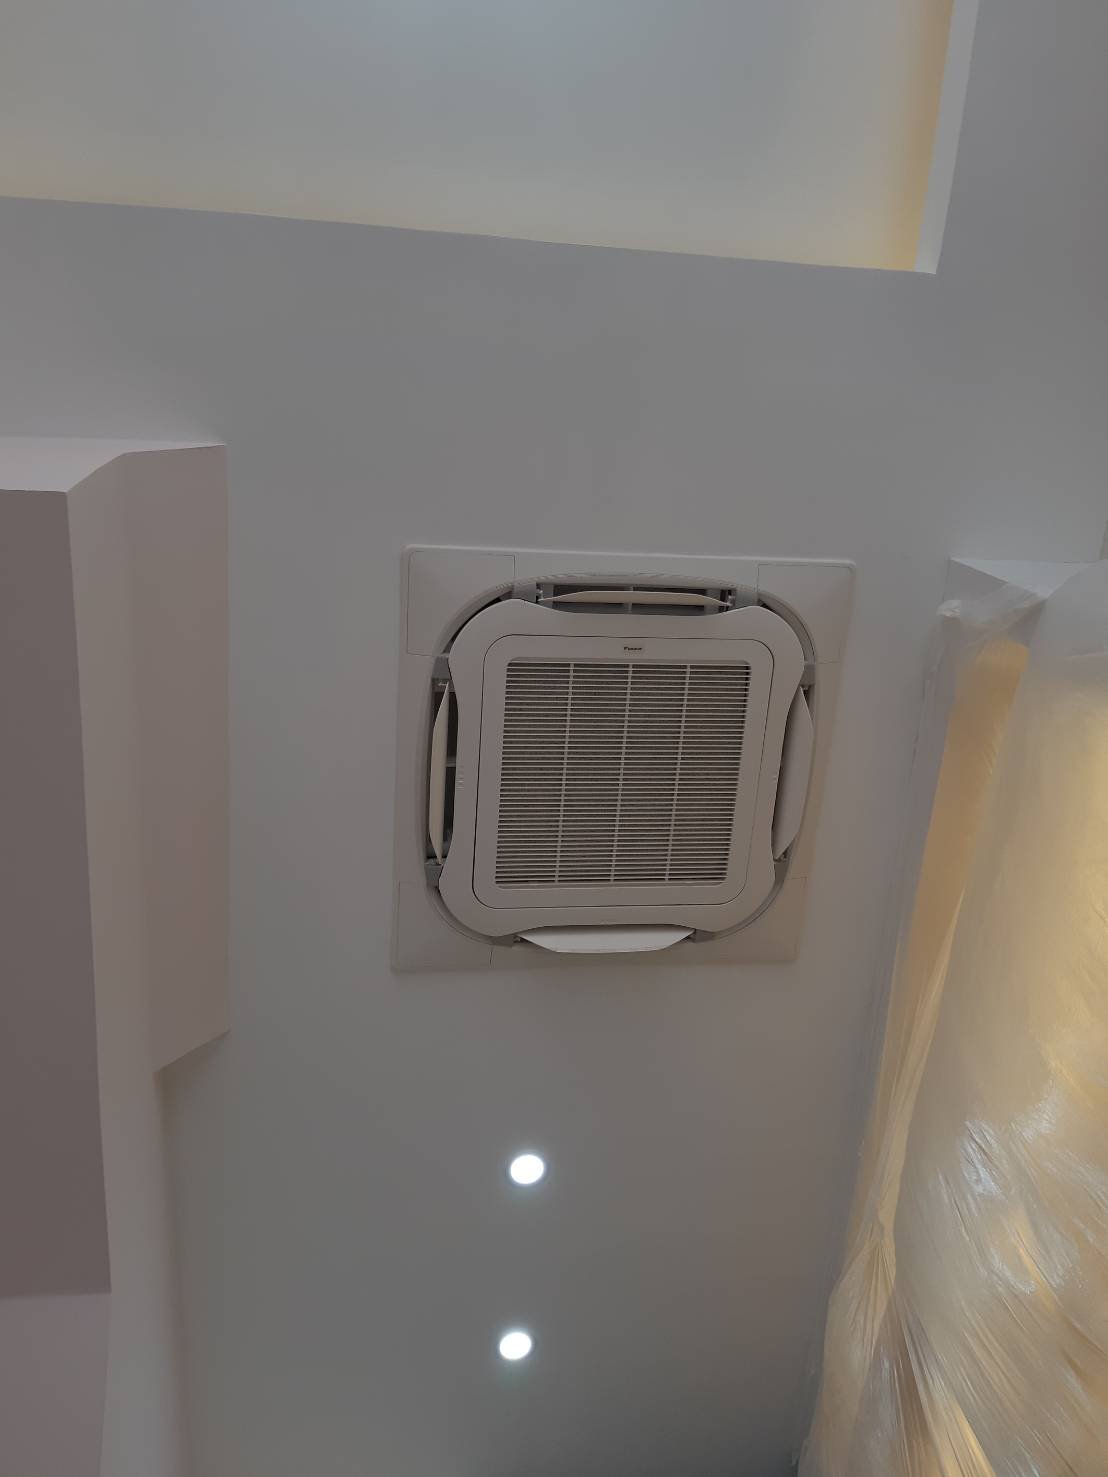 ร้านแพรวพราวคิ้วงาม บ้านคุณสถาพร5 ติดตั้งแอร์ แบบติดผนัง DAIKIN Cassatte Standard Inverter  (อากาศ…เพื่อลมหายใจของคุณ) + ติดตั้งแอร์เดิม 1 ชุด